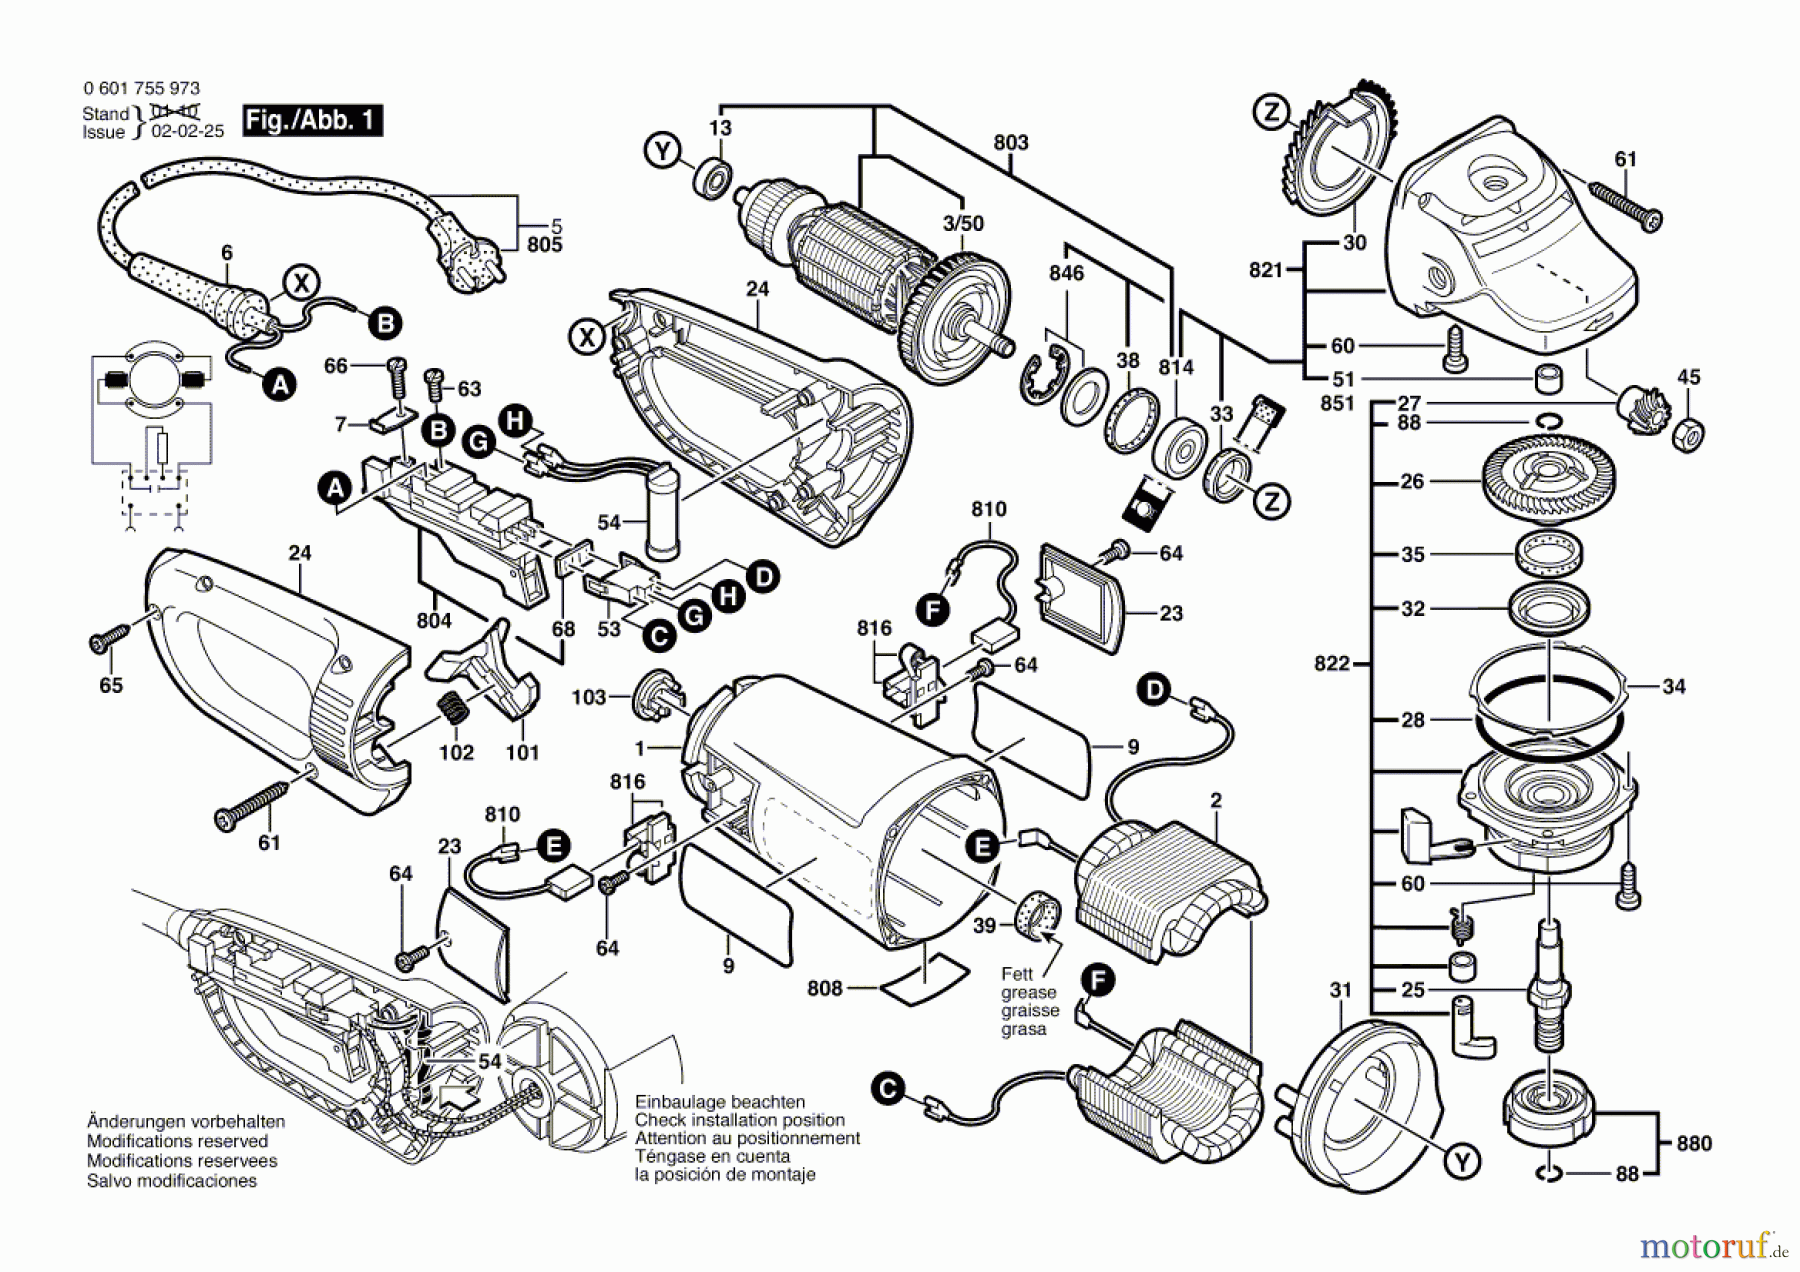  Bosch Werkzeug Winkelschleifer GWS 25-180 JS Seite 1